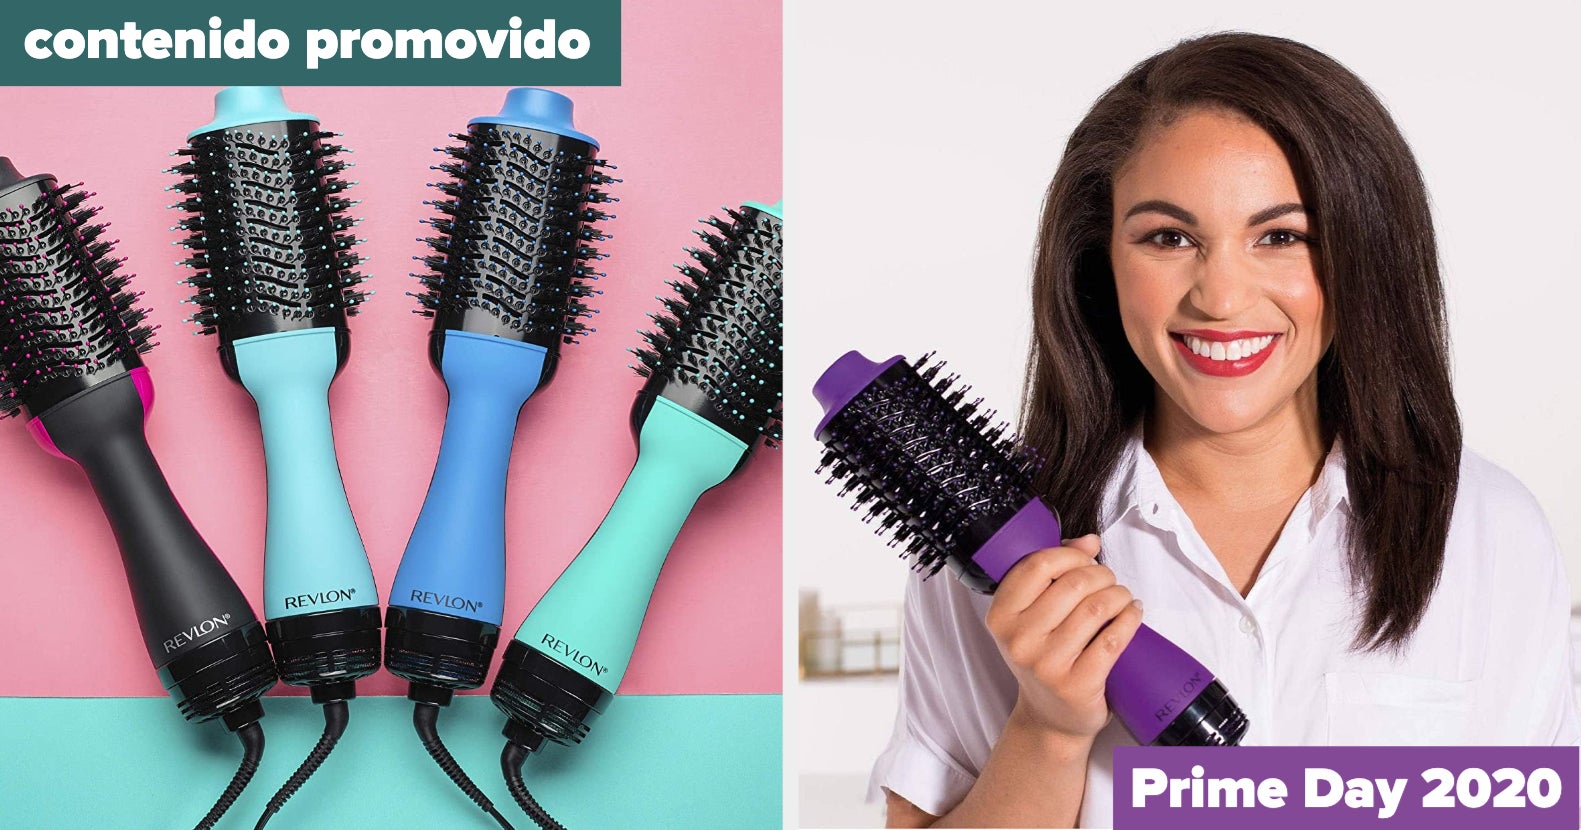 Prime Day 2020: Oferta de cepillo secador de pelo Revlon